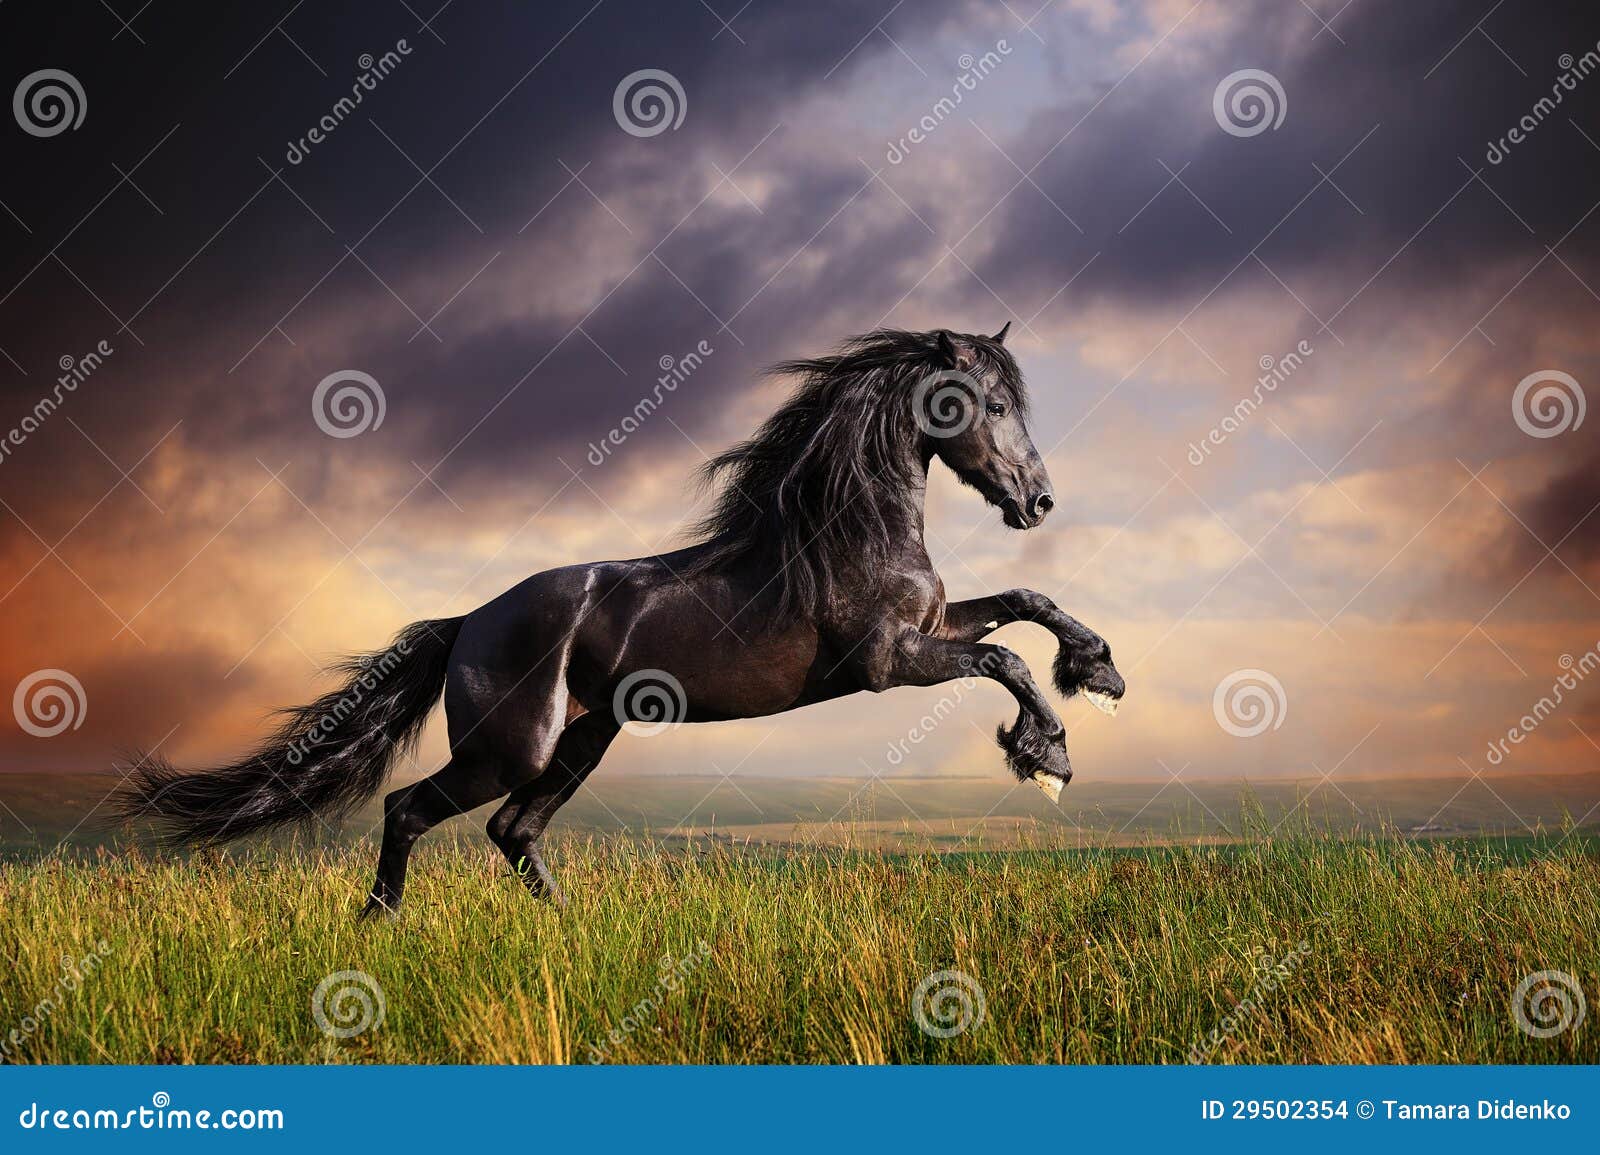 black friesian horse gallop